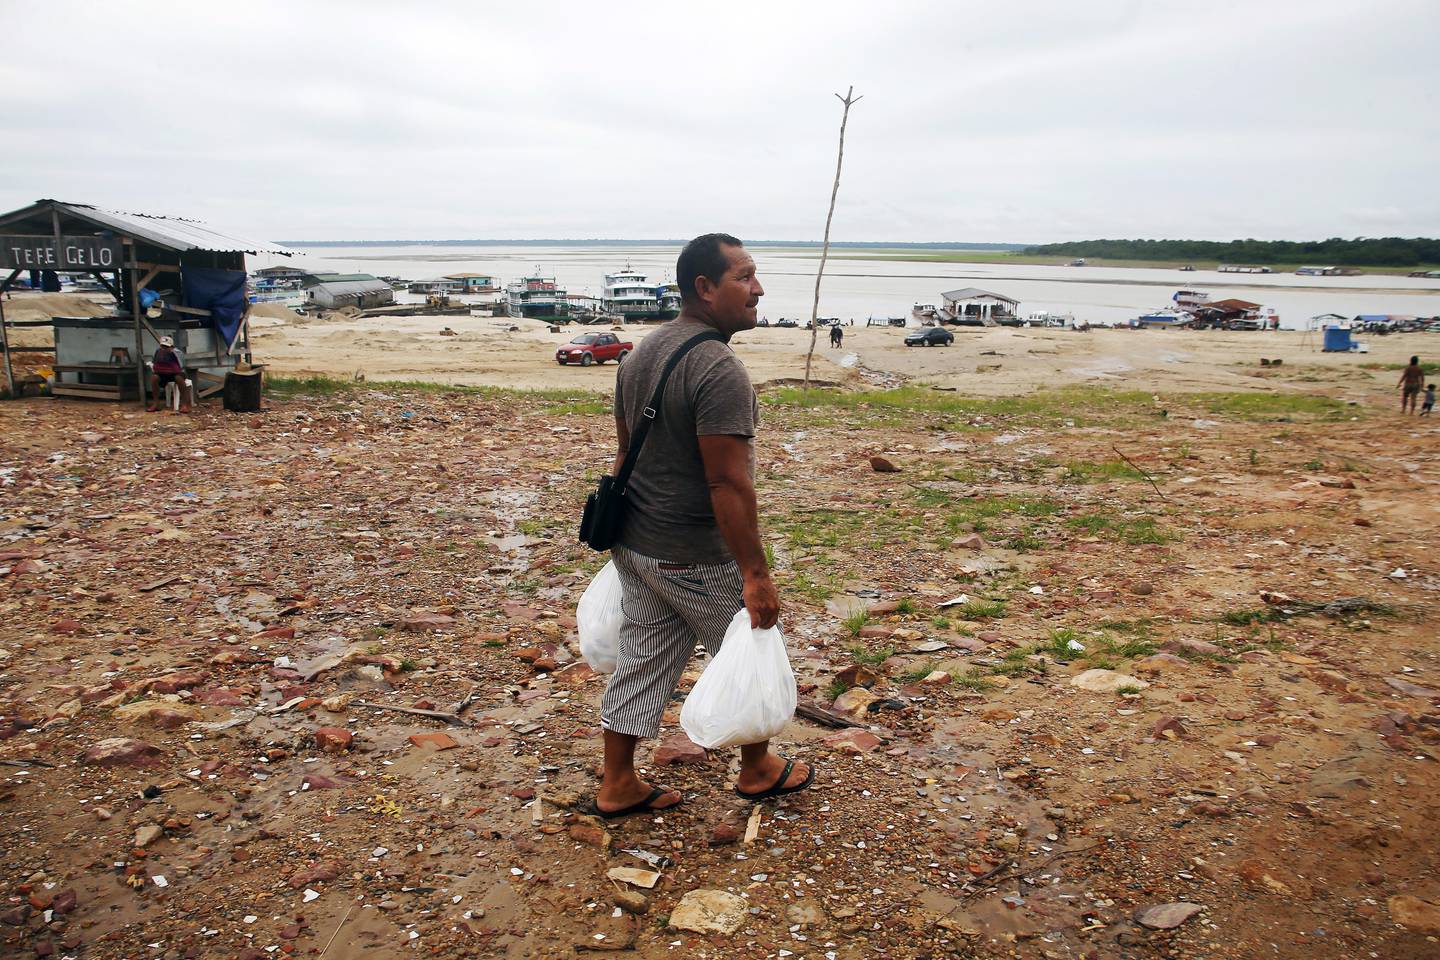 PÅVIRKET: Fiskeren Pedro Canizio da Silva går med mat i et område påvirket av tørken nær Solimões-elven, i byen Tefe. Byen ligger i delstaten Amazonas i Brasil. Hvis vannstanden i elven ikke stiger snart, vil samfunnet miste en betydelig inntektskilde.